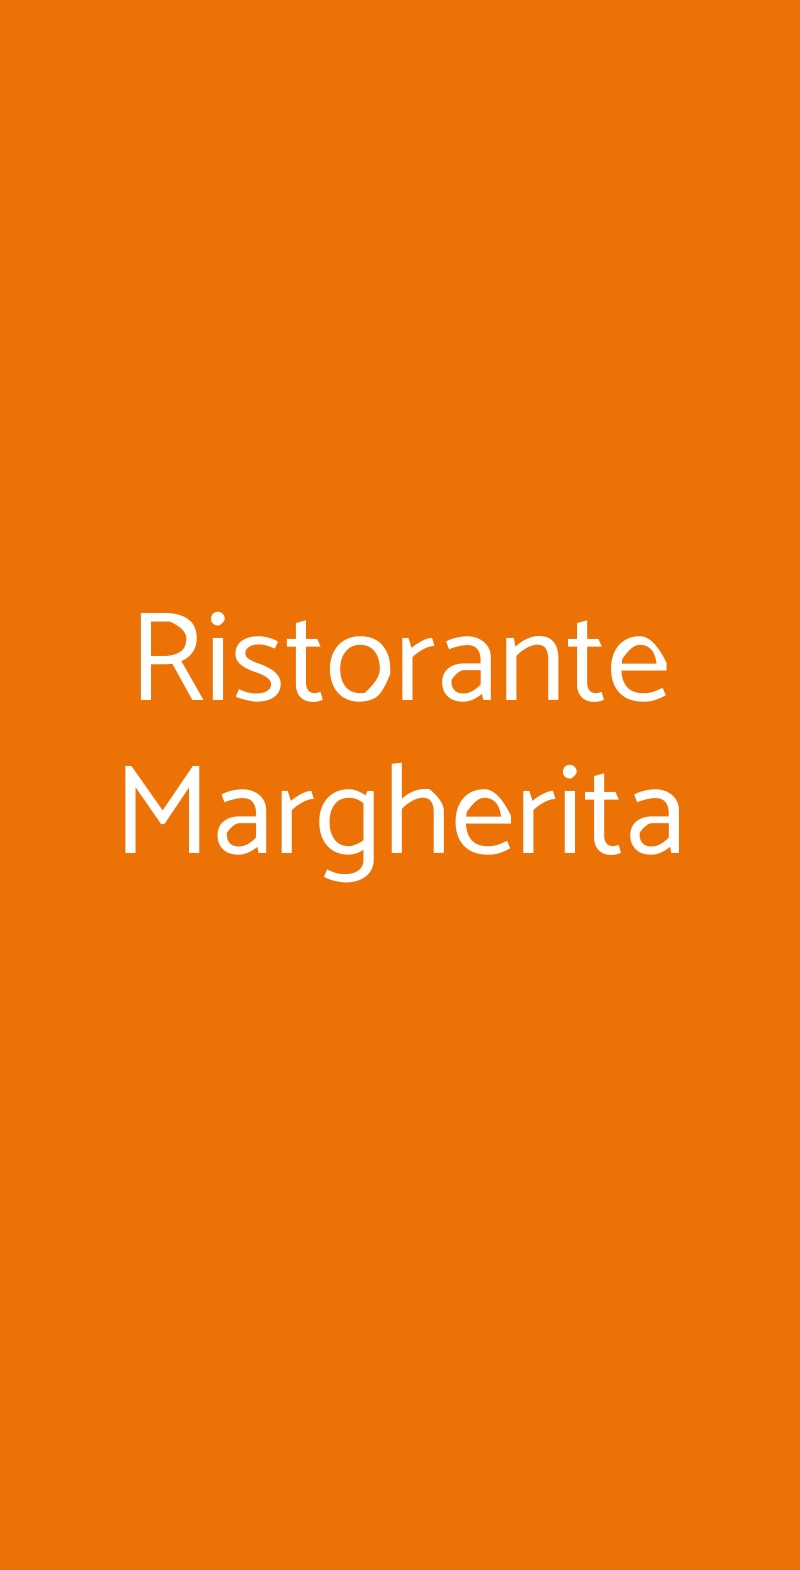 Ristorante Margherita Marano di Napoli menù 1 pagina